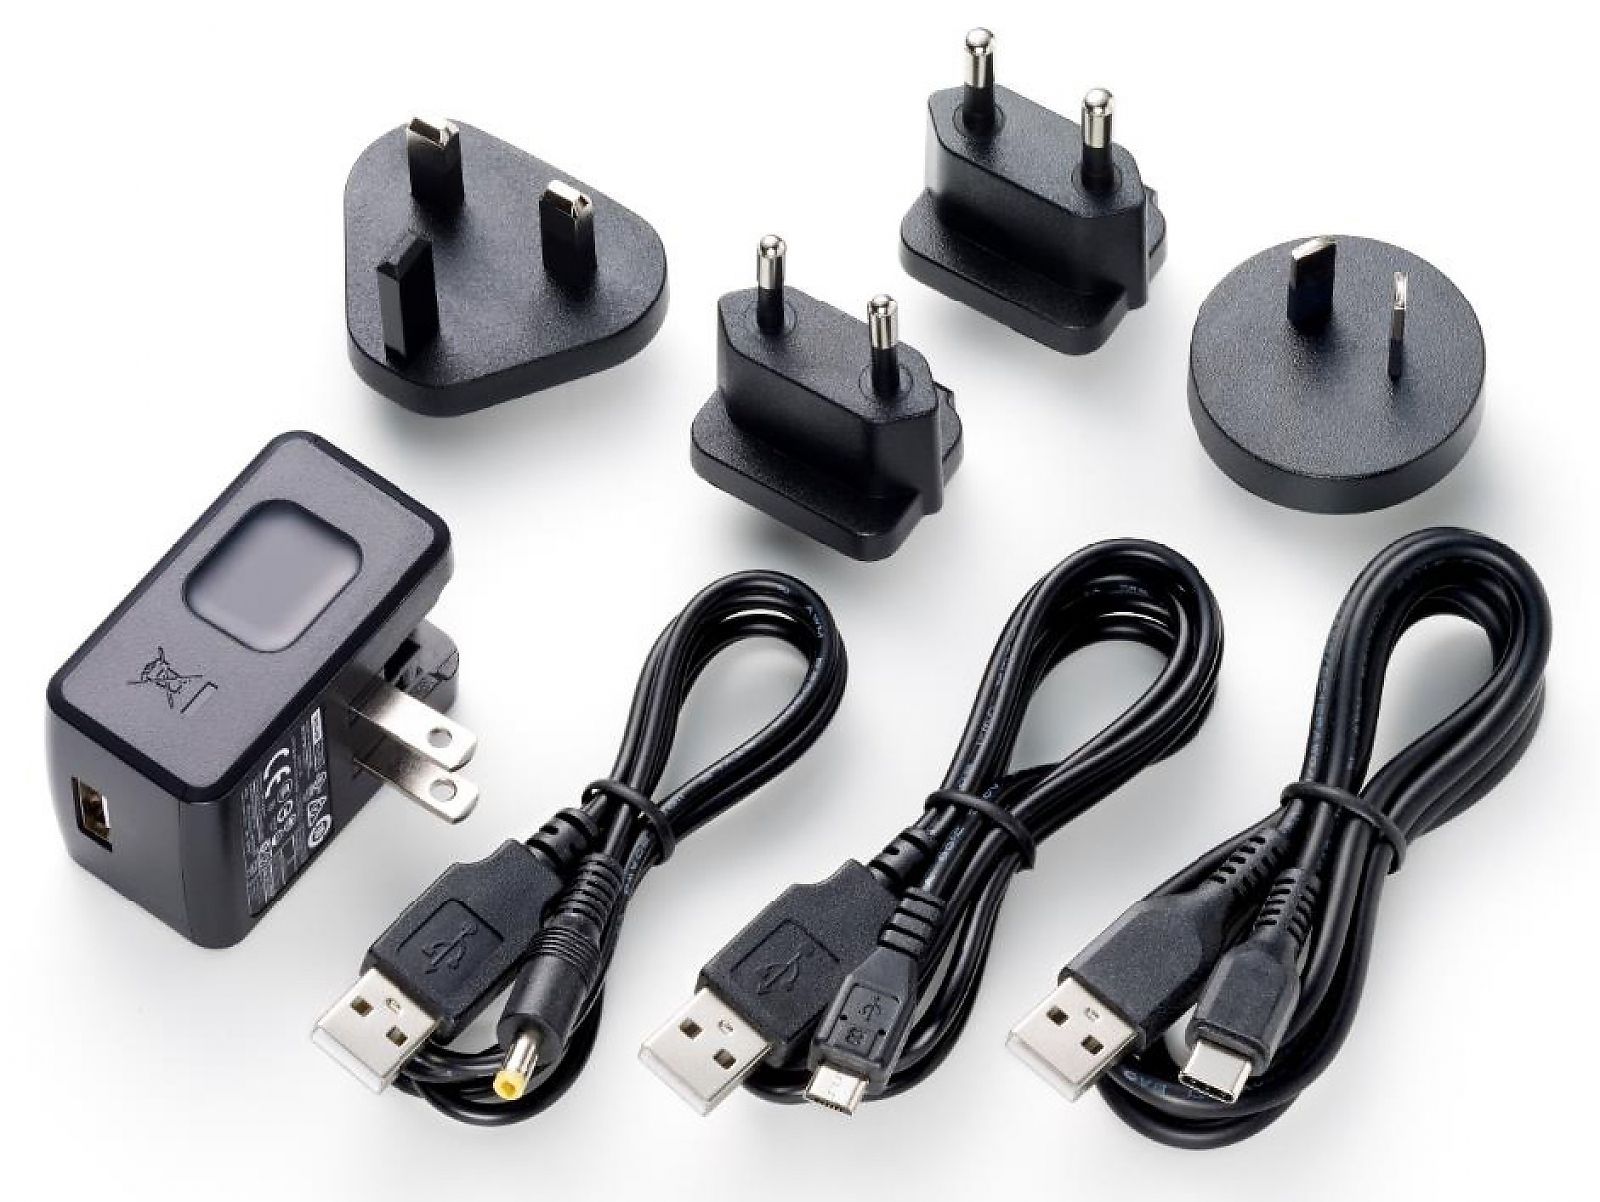 Tascam PS-520U Netzteil Wechselstromadapter für verschiedene Tascam-Produkte